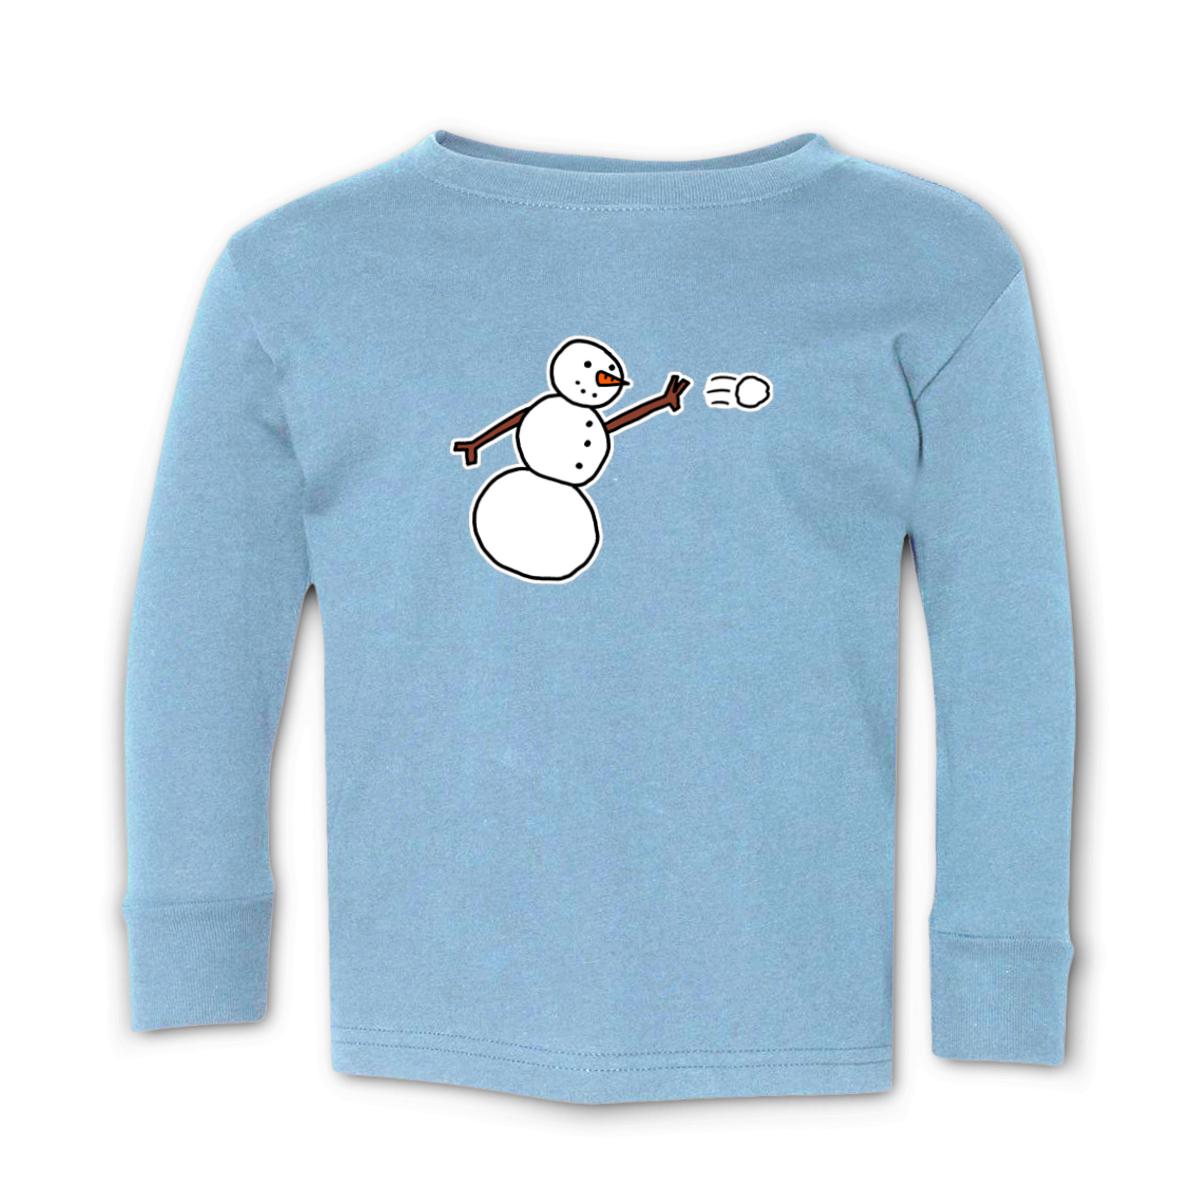 Snowman Throwing Snowball Toddler Long Sleeve Tee 2T light-blue